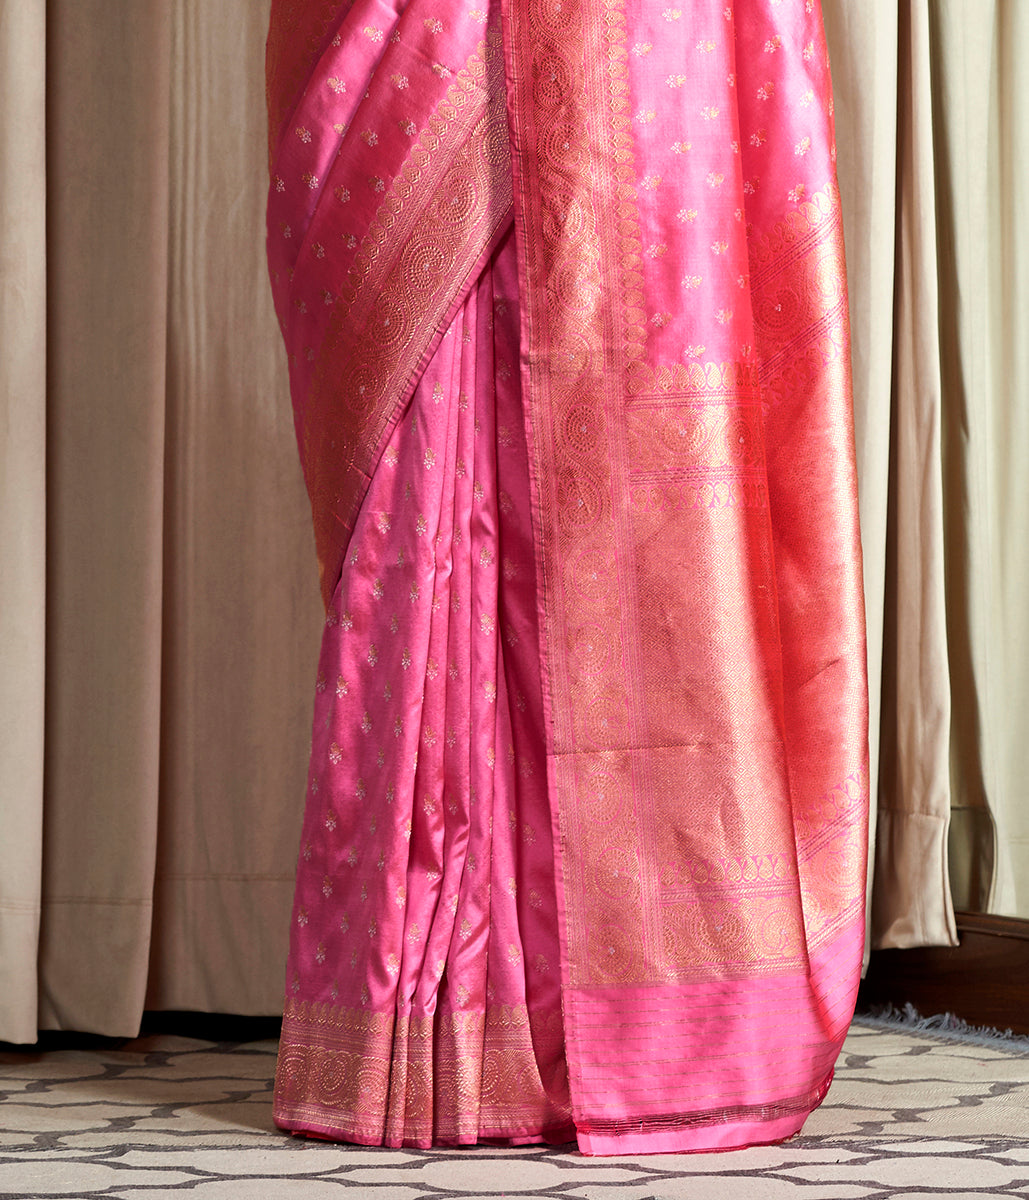 Handloom Soft Pink Banarasi Saree with Small Zari Paisleys